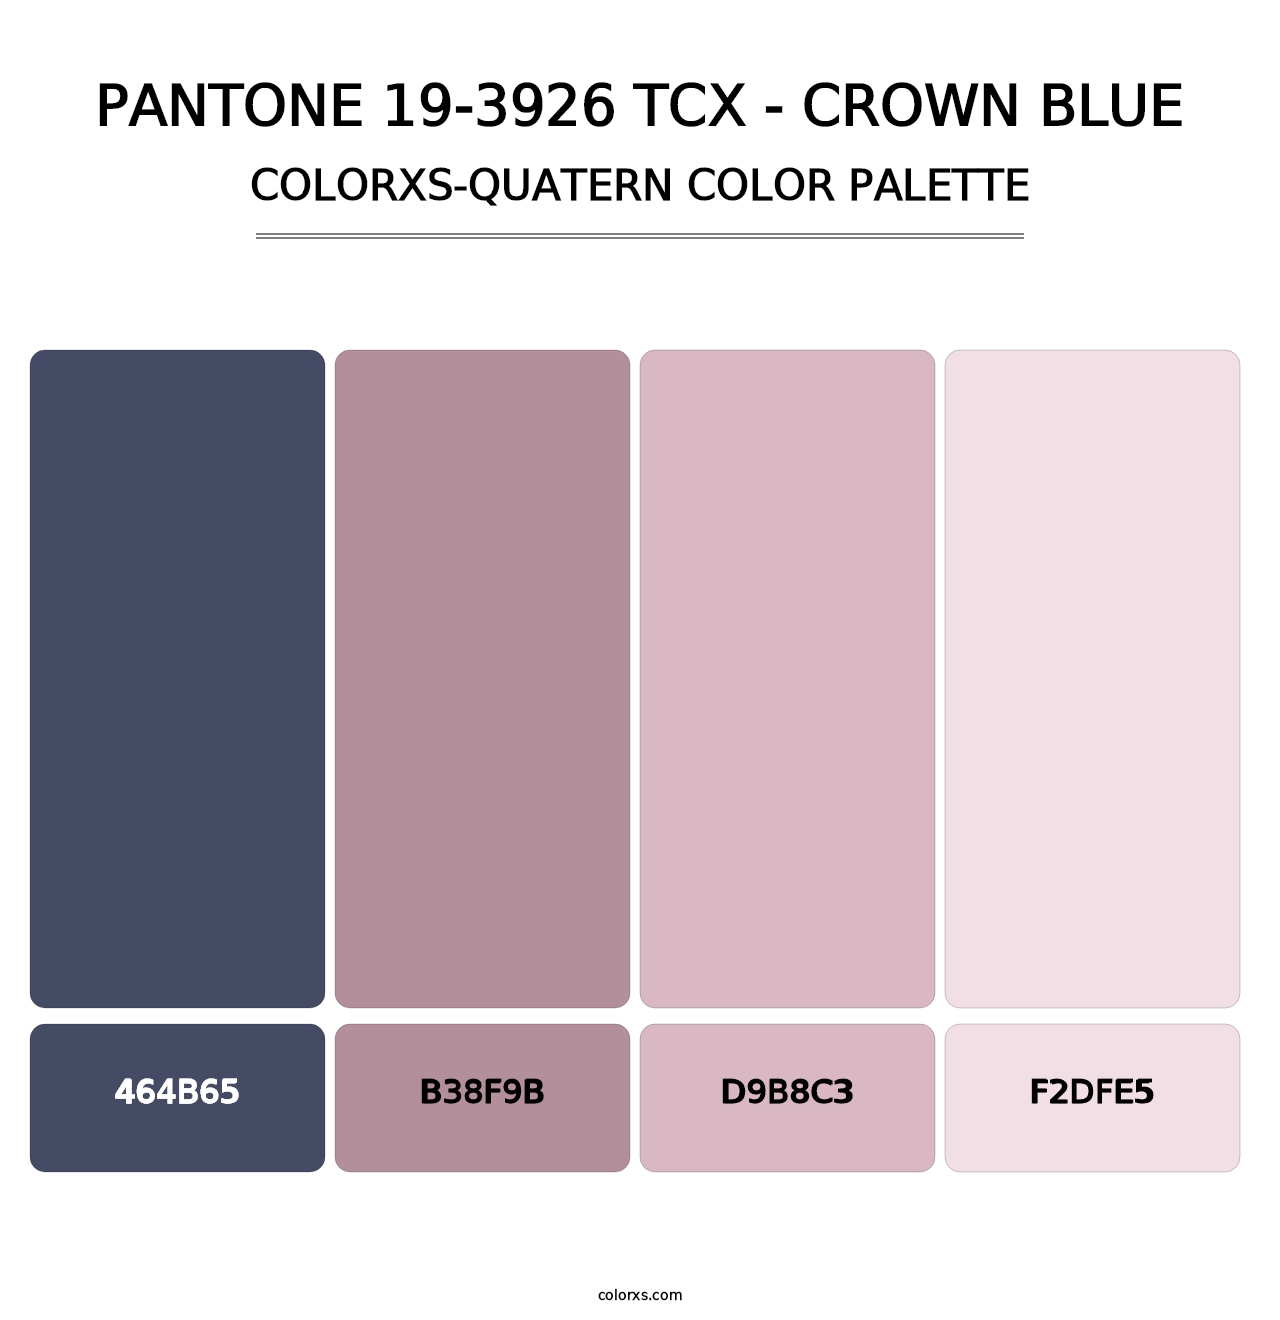 PANTONE 19-3926 TCX - Crown Blue - Colorxs Quatern Palette